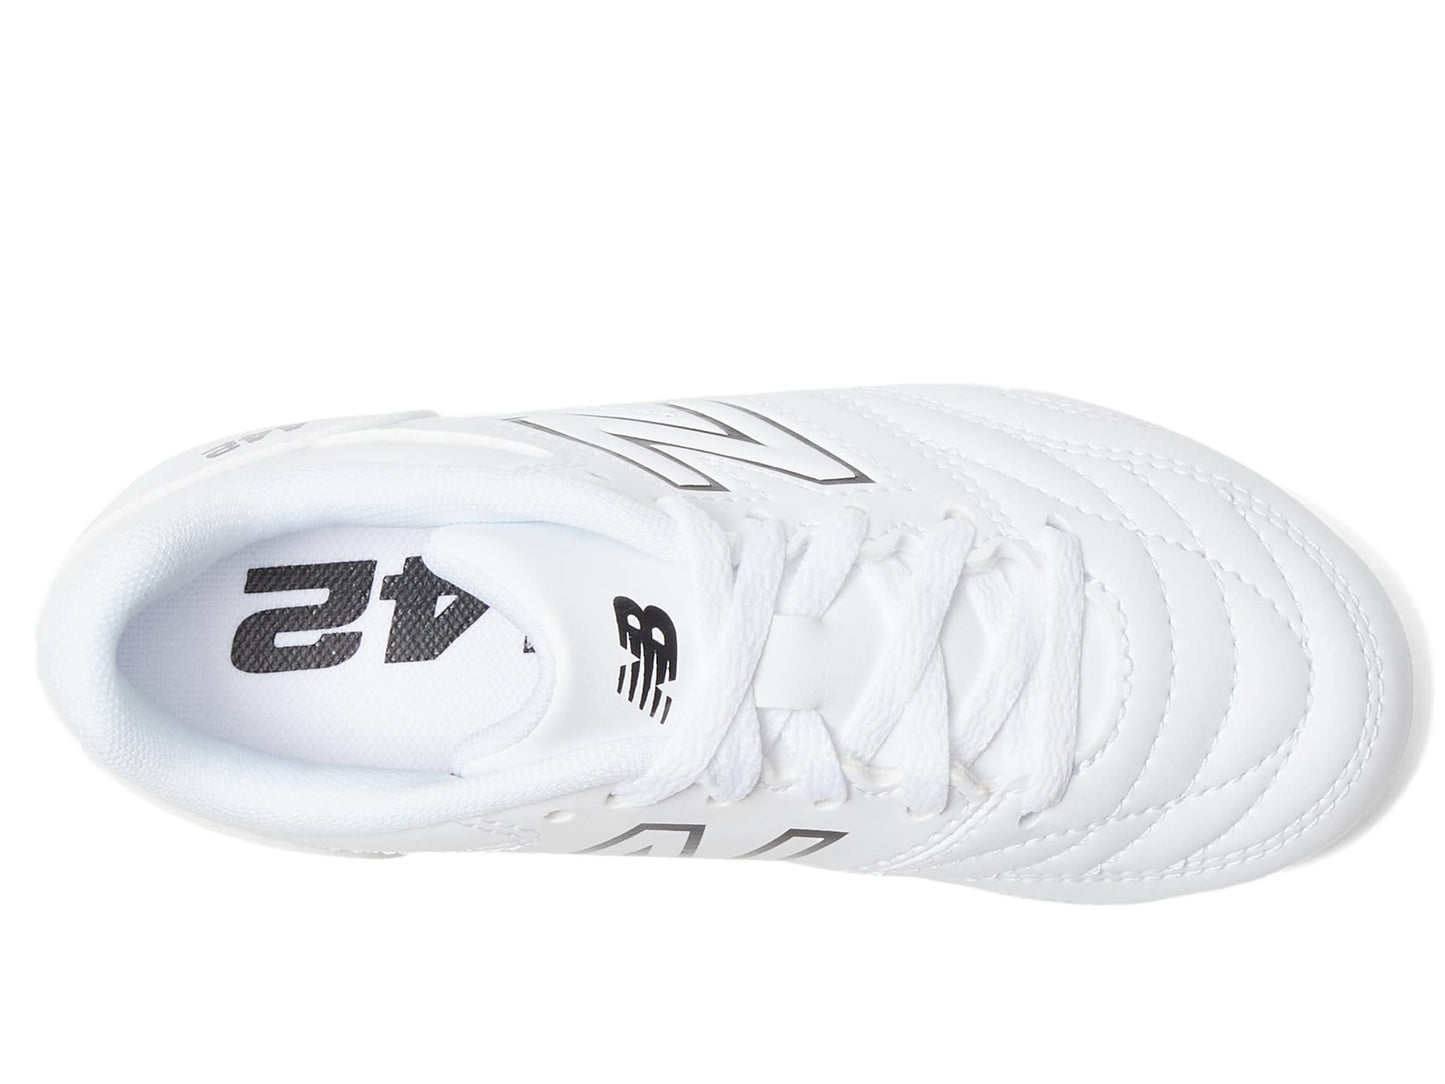 New Balance Boy's 442 V2 Academy FG Junior Soccer Shoe, White/Black, 3 Little Kid